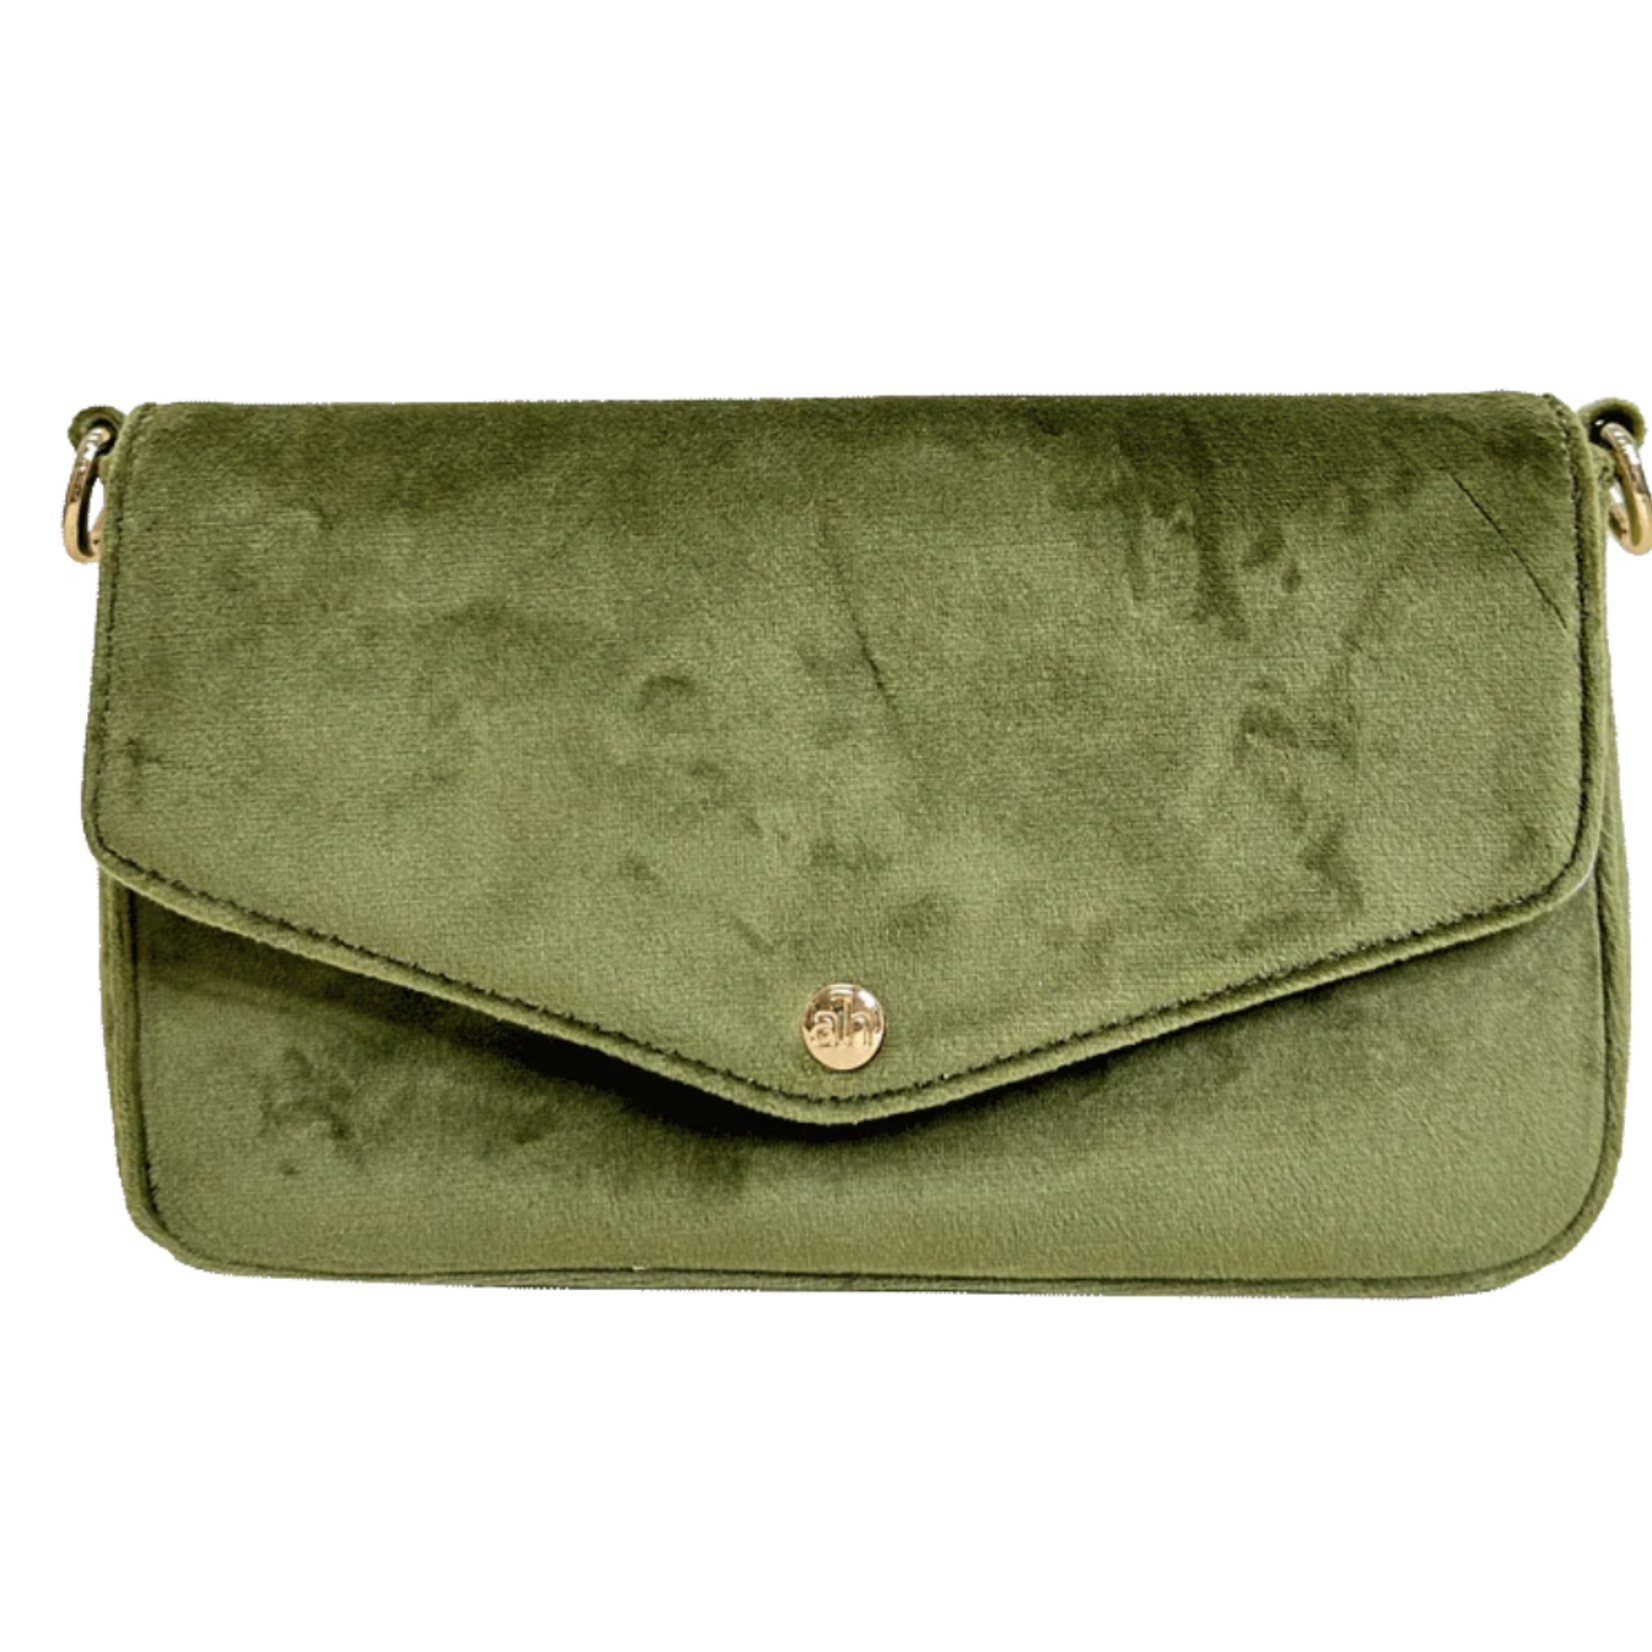 ah-dorned Louise Velvet Flap Bag w/Removable Chain Strap- Moss Green